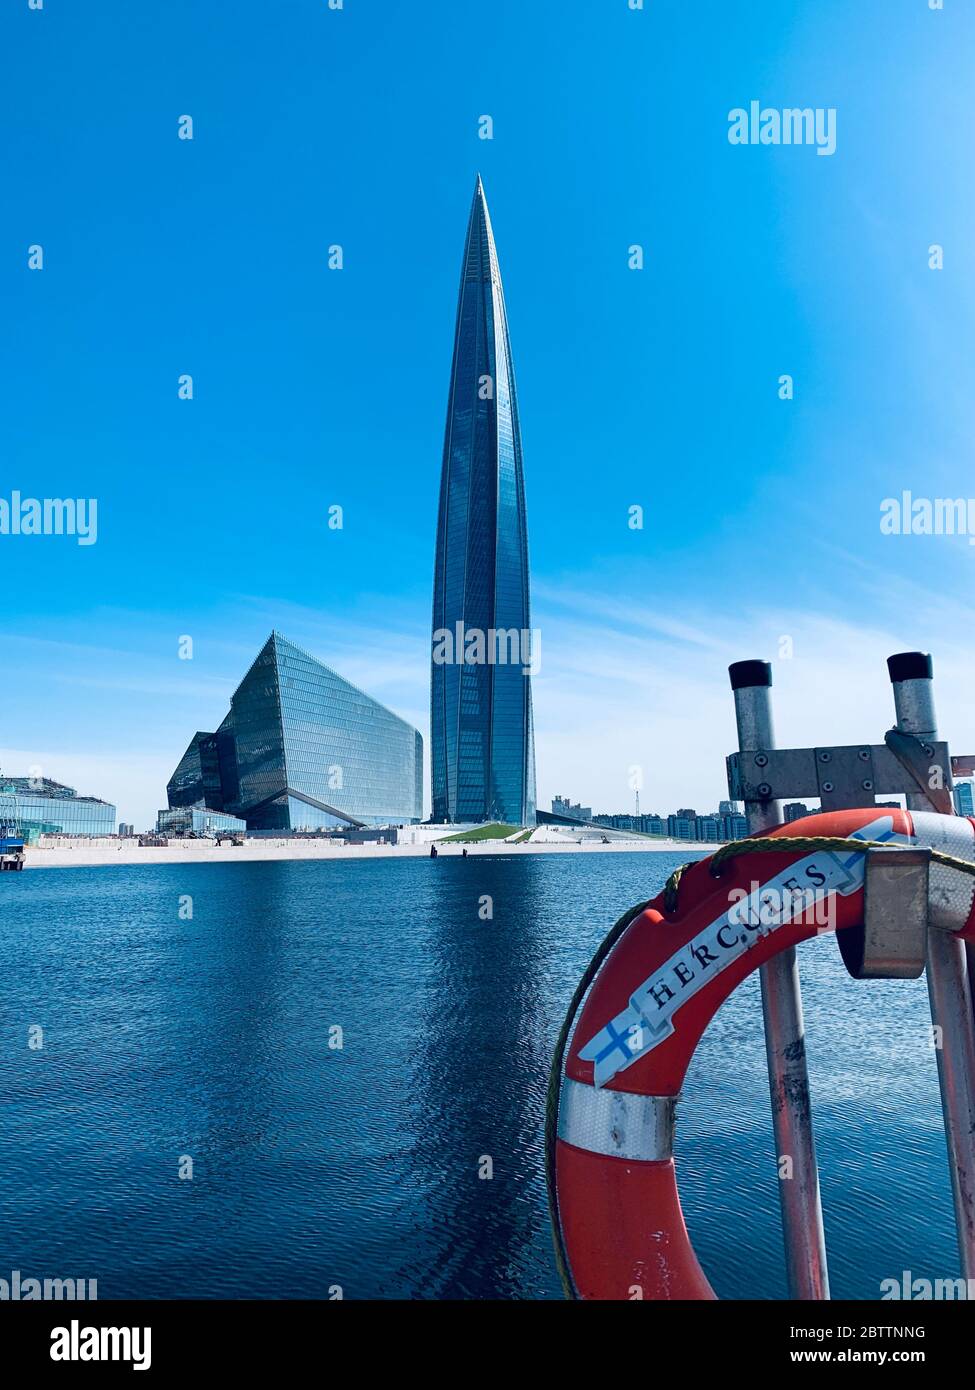 Russie, Saint-Pétersbourg, 26 mai 2020: Le centre de Lakhta par une bouée de sauvetage à l'heure du jour, c'est le plus haut gratte-ciel d'Europe, achèvement de Banque D'Images